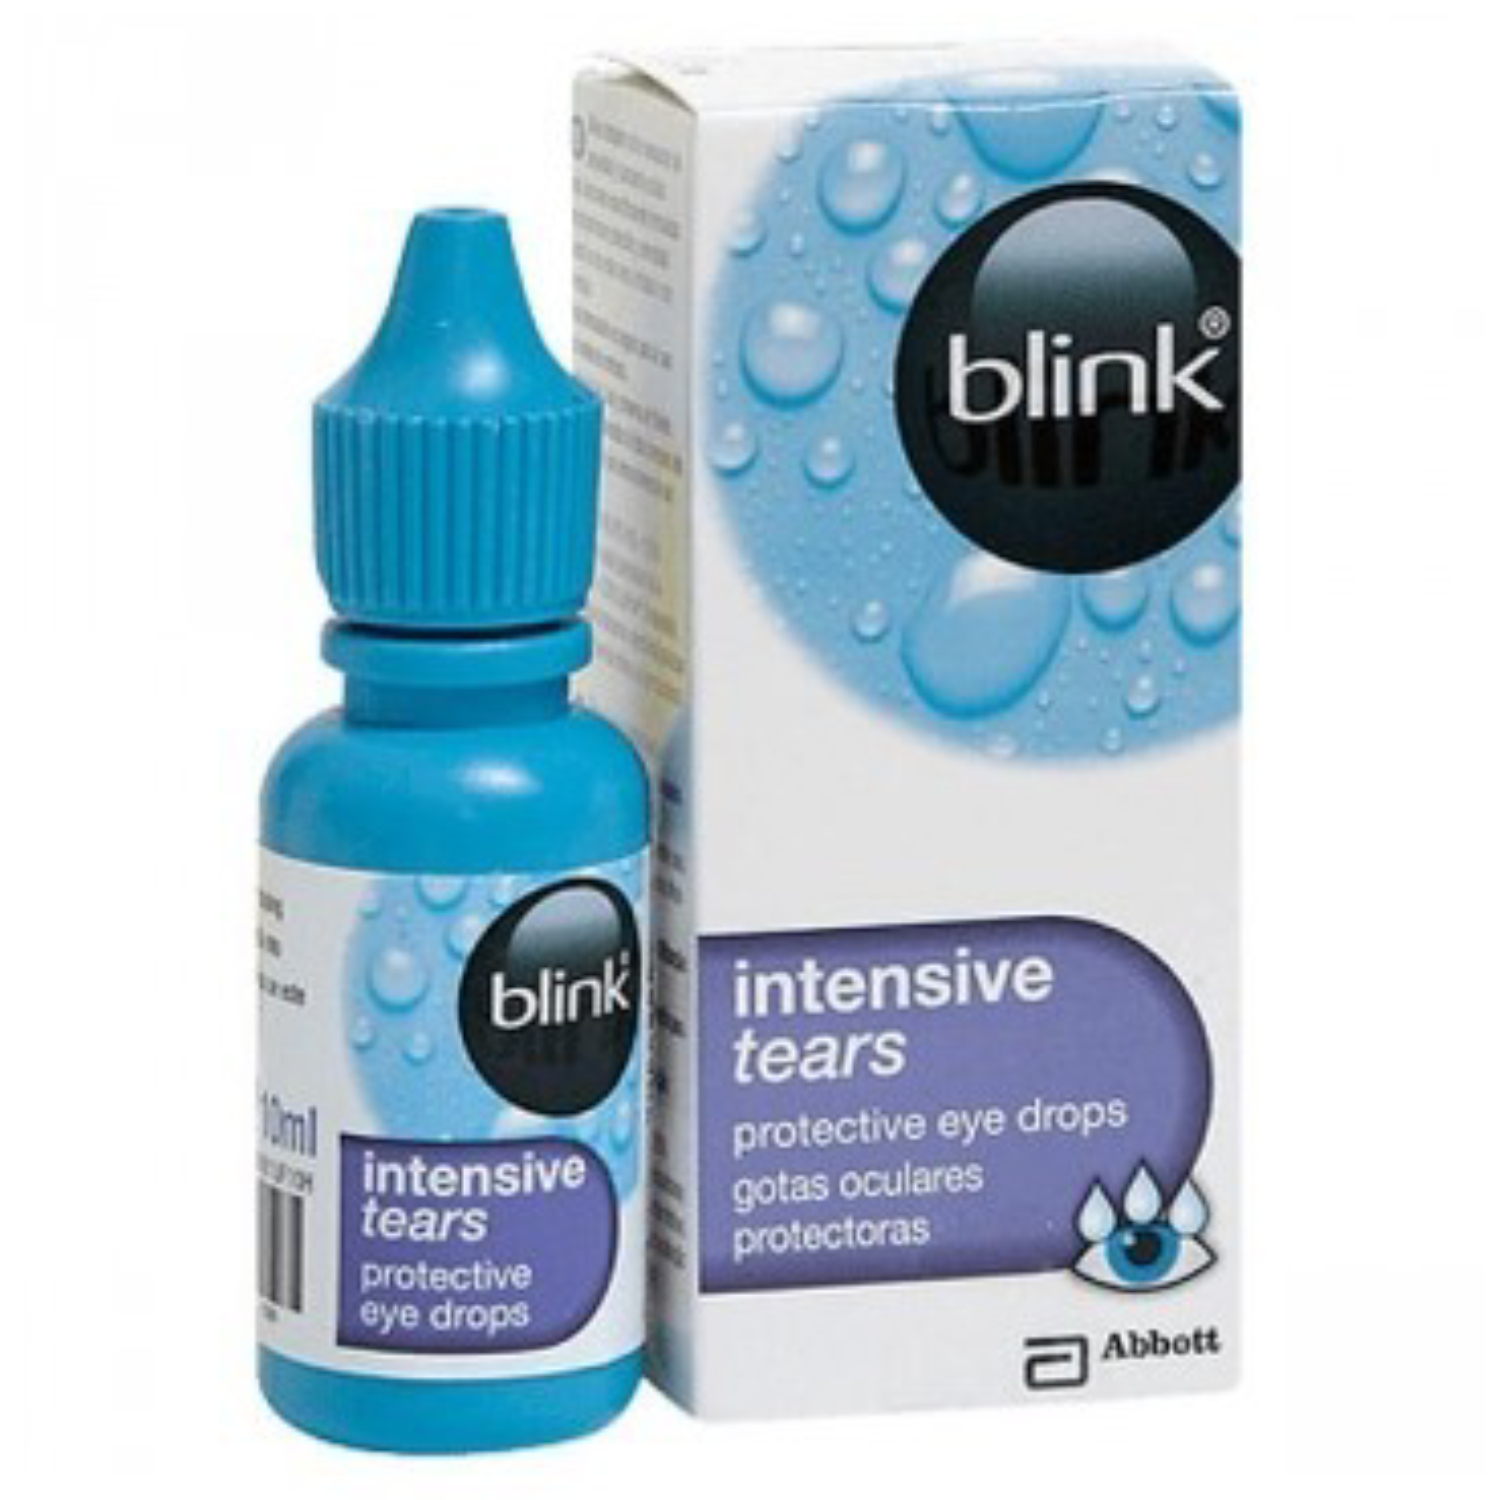 بلينك (Blink) إنتينسيف دموع واقية من قطرات العين 10 مل